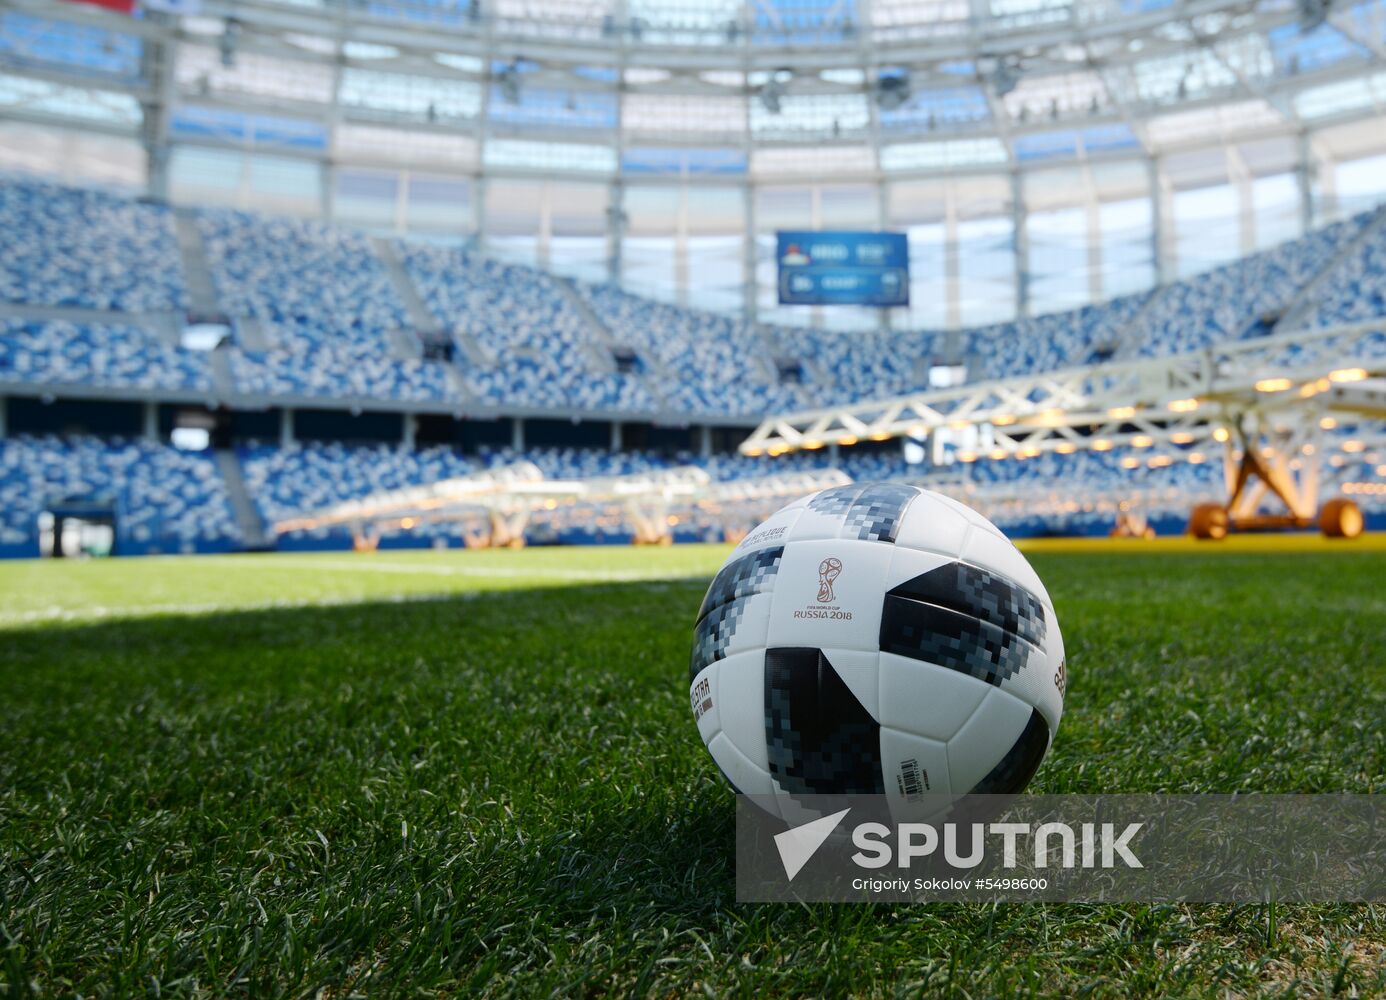 Stipe Pletikosa visits Nizhny Novgorod Stadium